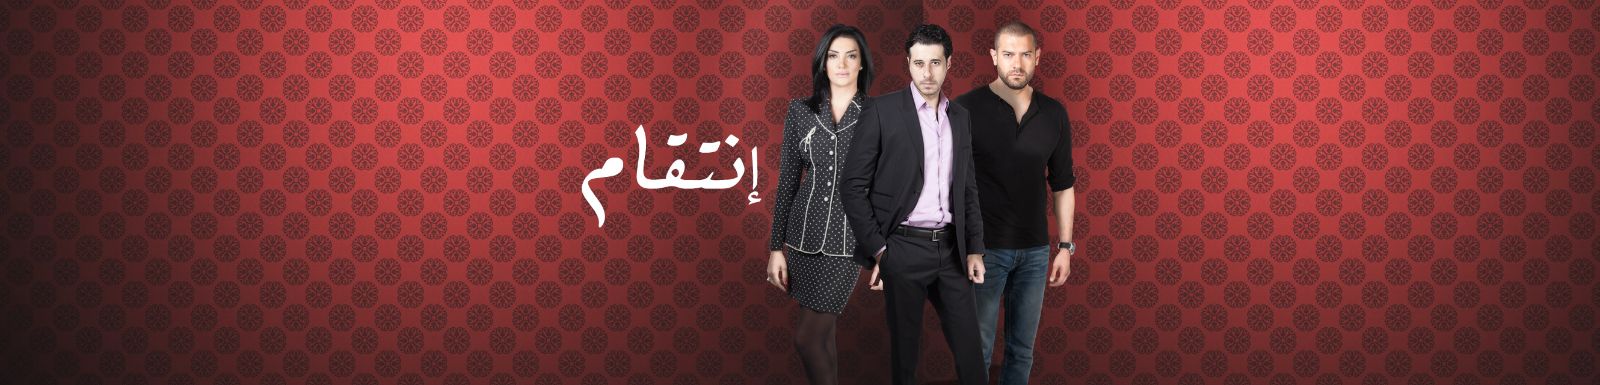 موعد وتوقيت عرض مسلسل إنتقام 2015 على قناة mbc مصر